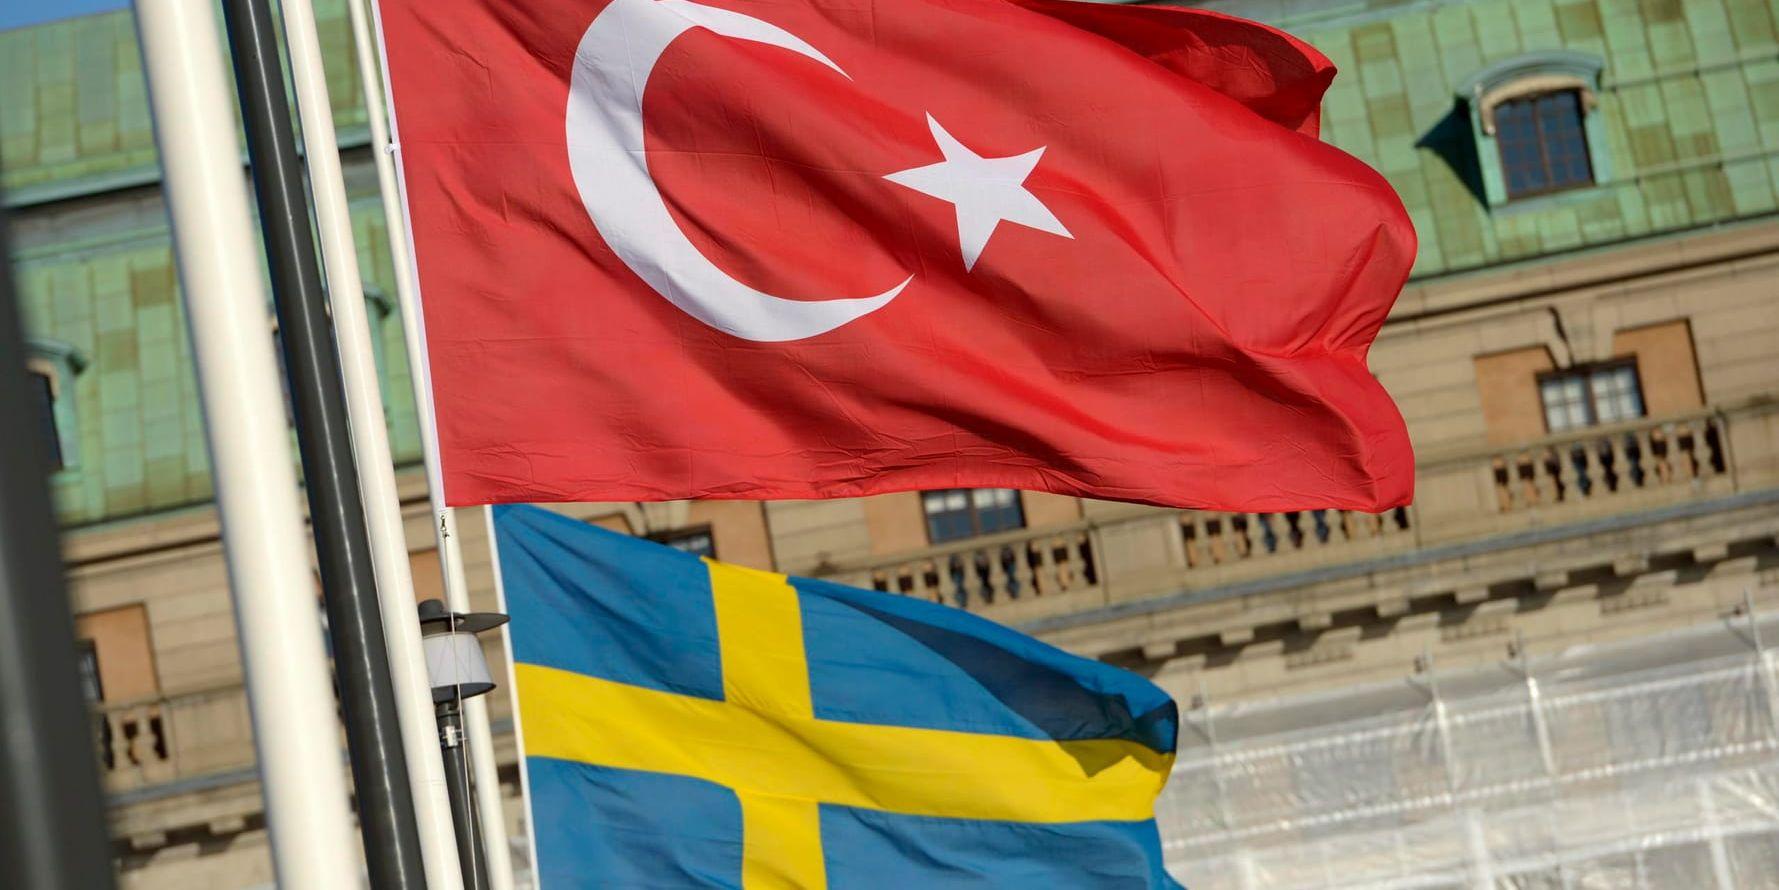 Turkiet kartlägger oppositionella i Sverige, uppger Ekot. Arkivbild.